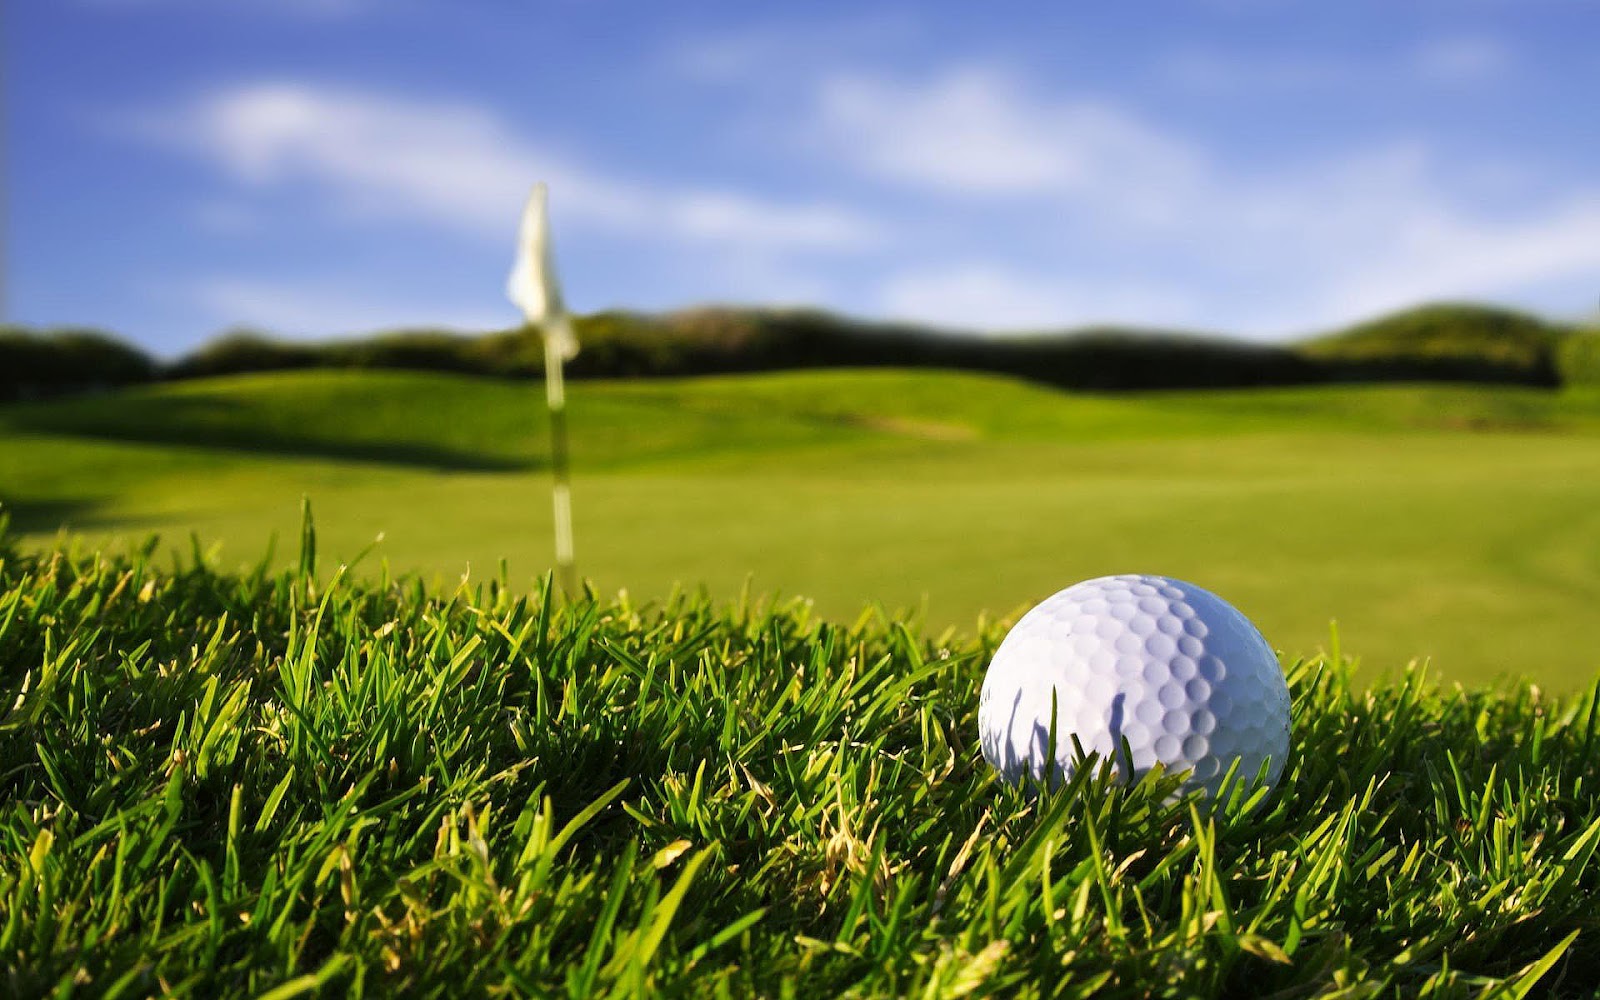 Best Top Desktop Golf Wallpaper HD Sport Pictures